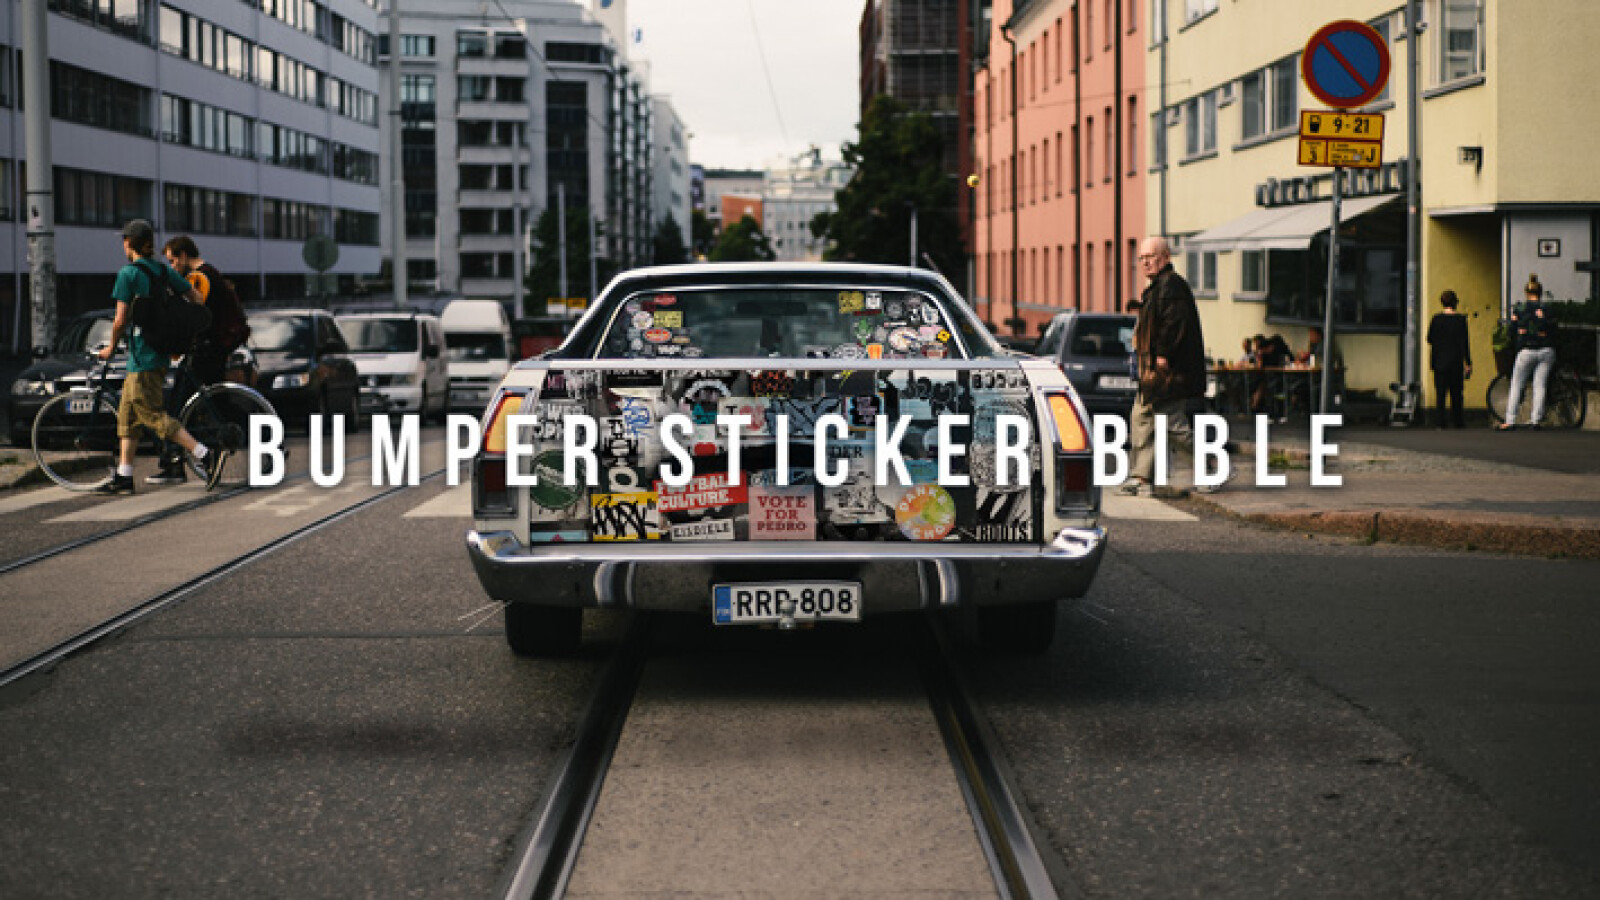 Bumper Sticker Bible